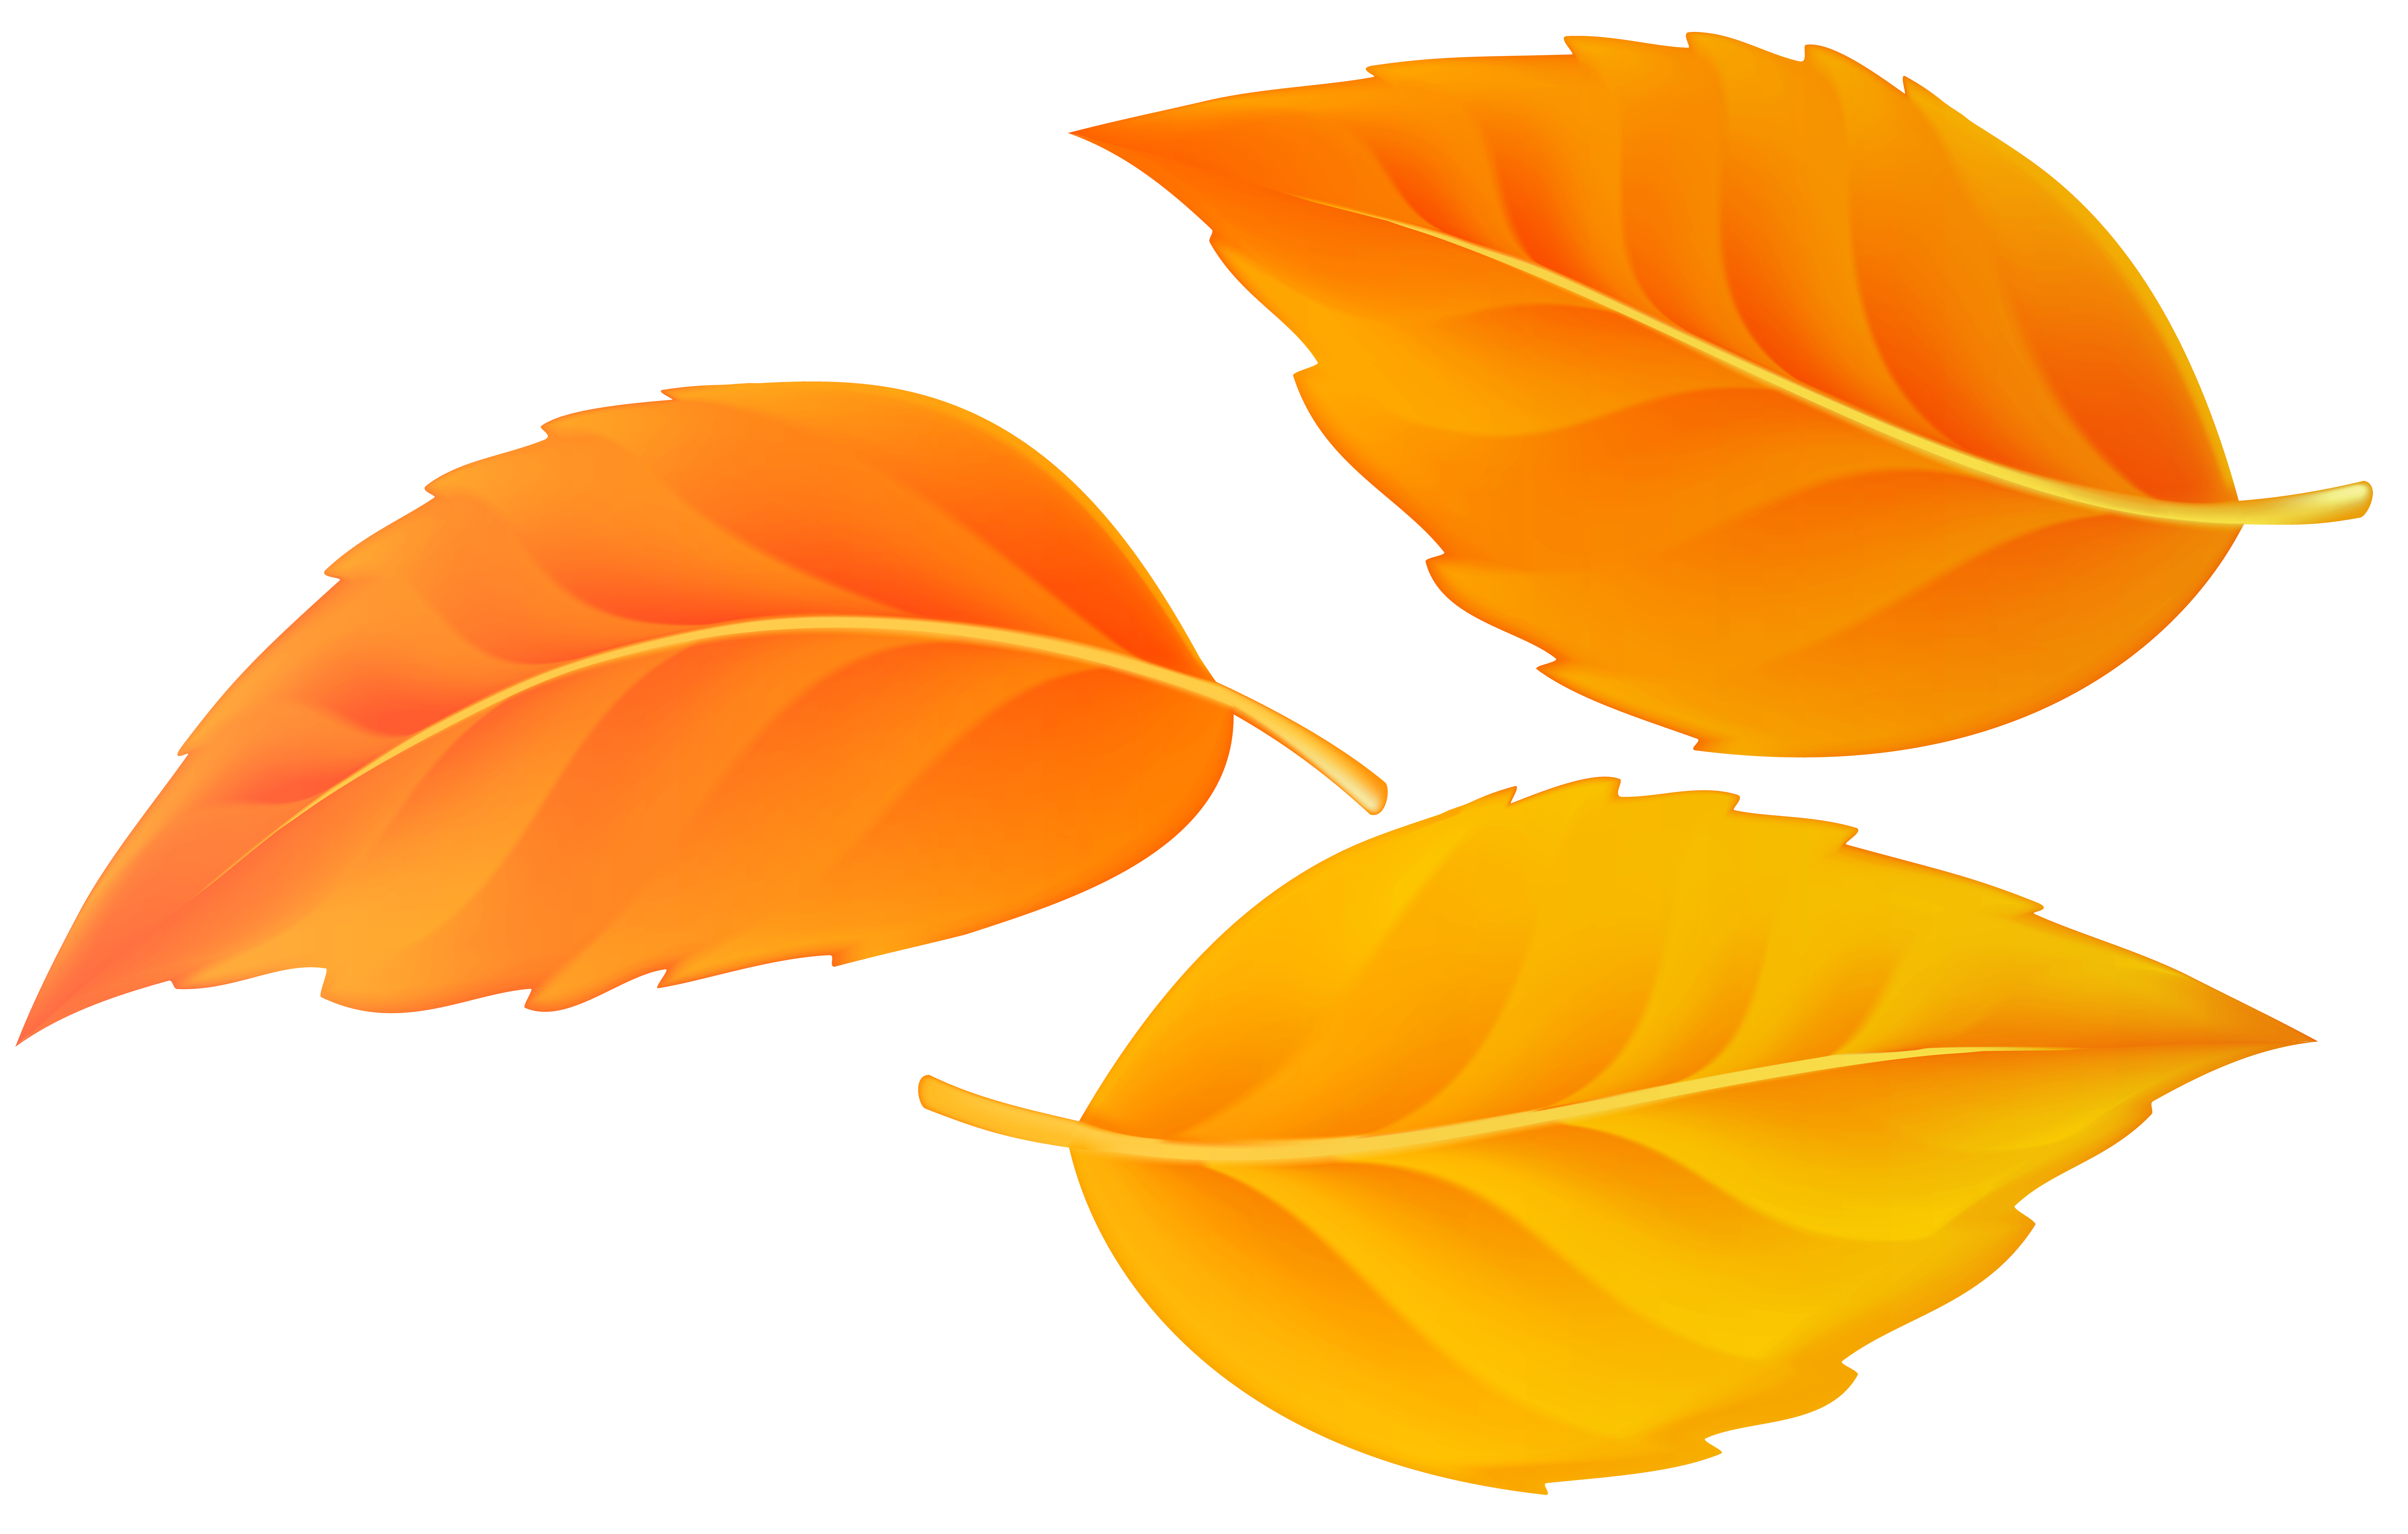 orange leaf clipart